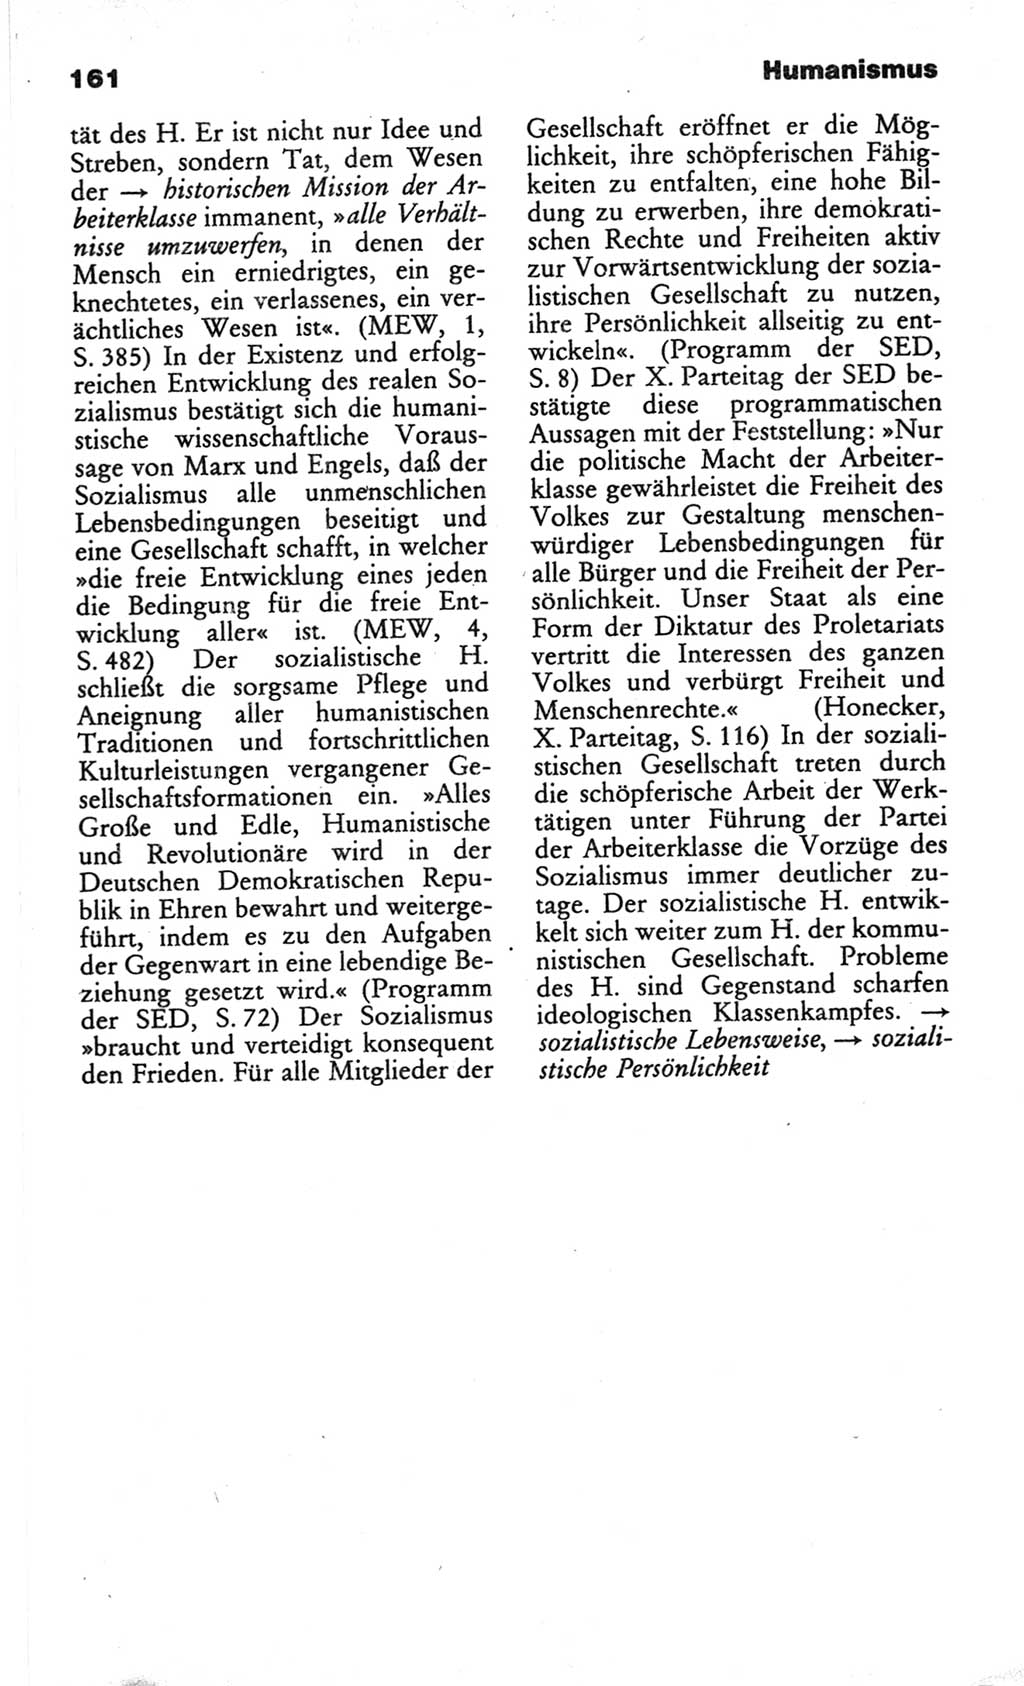 Wörterbuch des wissenschaftlichen Kommunismus [Deutsche Demokratische Republik (DDR)] 1982, Seite 161 (Wb. wiss. Komm. DDR 1982, S. 161)